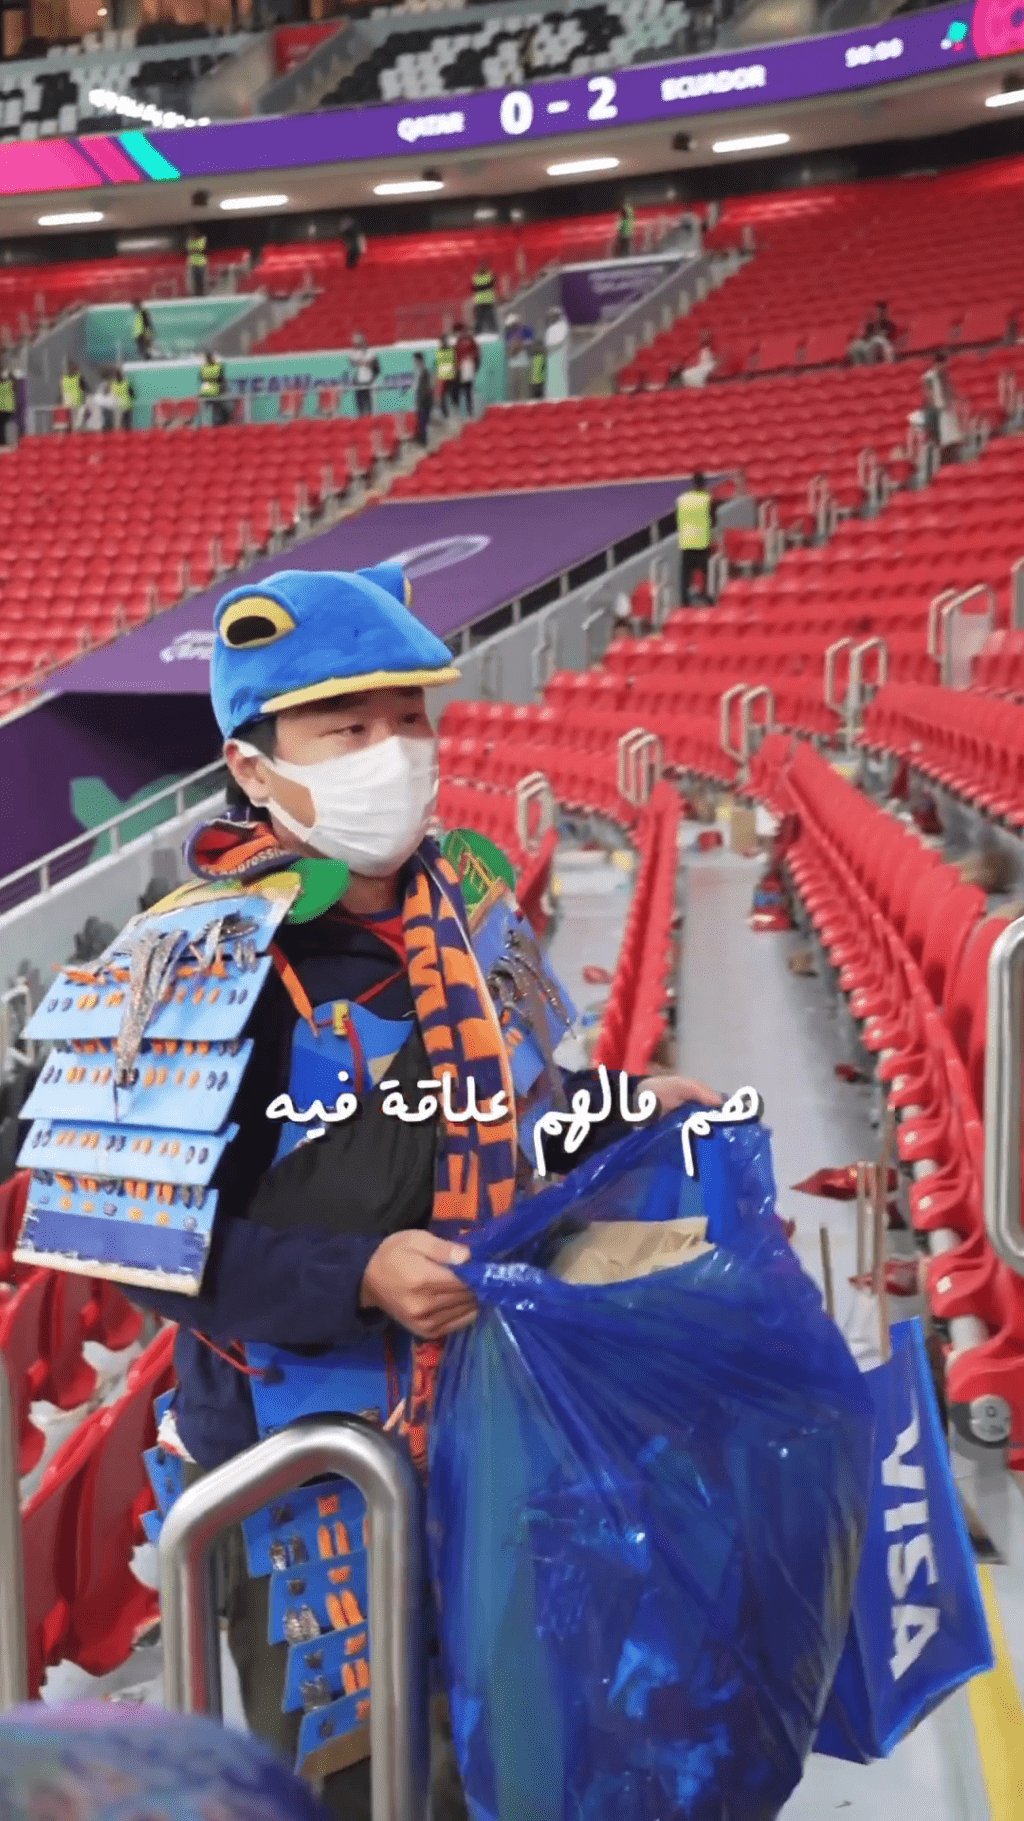 中东网红对日本球迷主动清理垃圾的美德表示尊重。网图